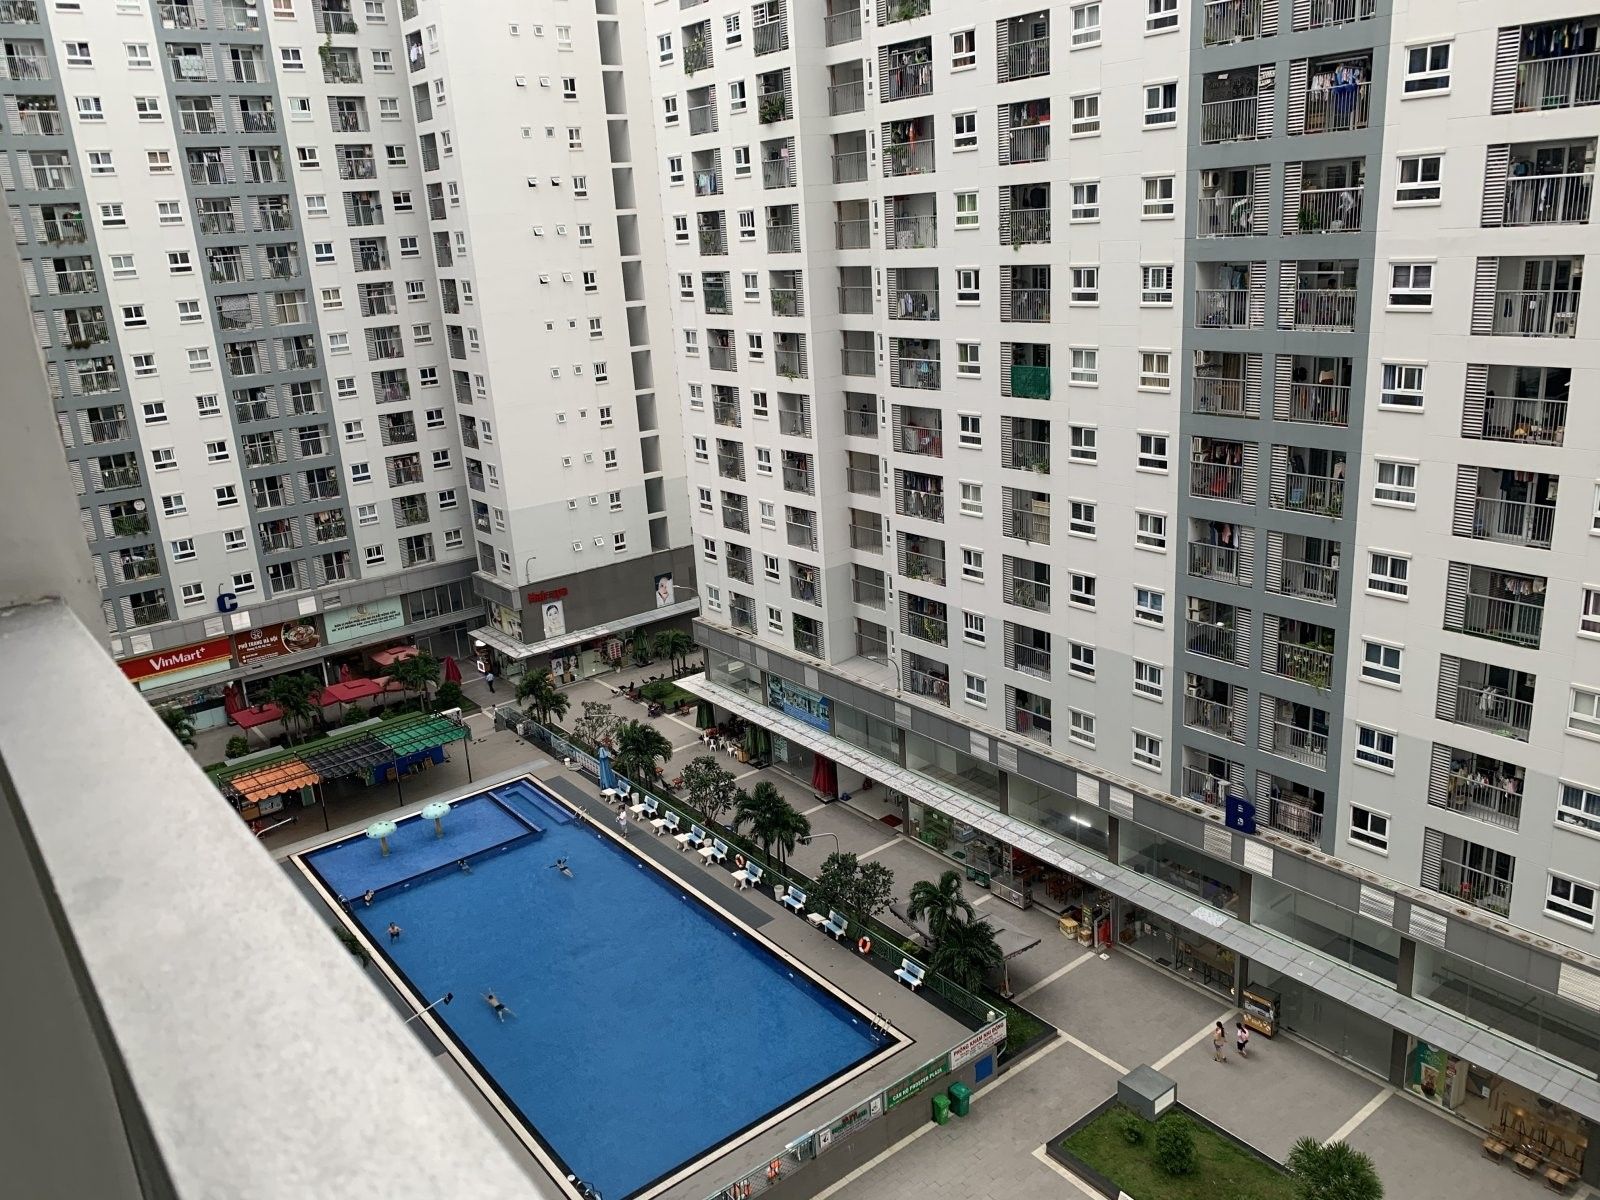 Top 3 chung cư cao cấp nào gần trường Trung cấp Nguyễn Tất Thành - Cơ sở Nguyễn Oanh, quận Gò Vấp?